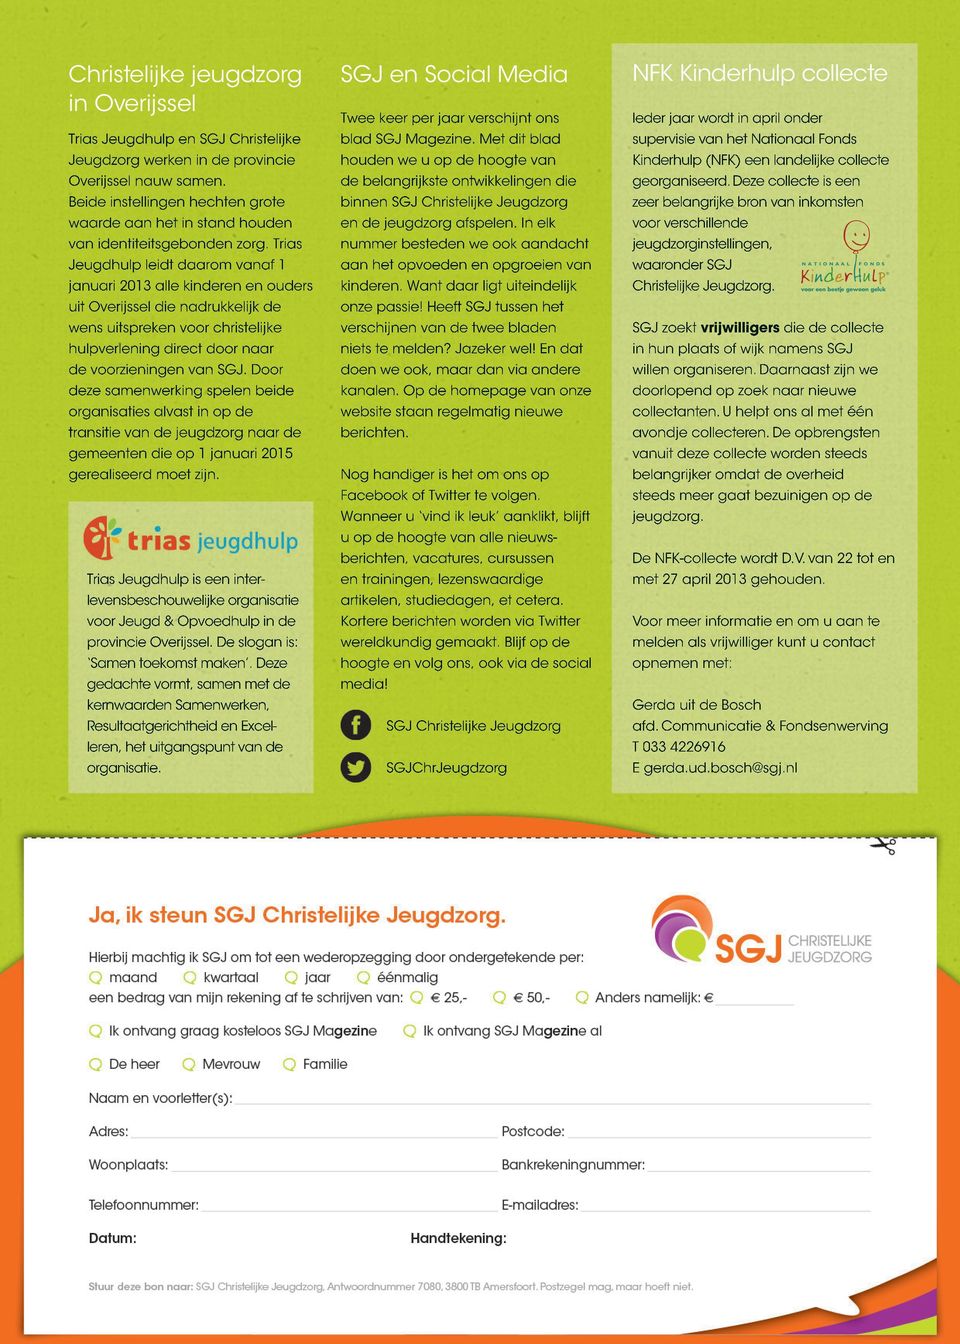 Trias Jeugdhulp leidt daarom vanaf 1 januari 2013 alle kinderen en ouders uit Overijssel die nadrukkelijk de wens uitspreken voor christelijke hulpverlening direct door naar de voorzieningen van SGJ.